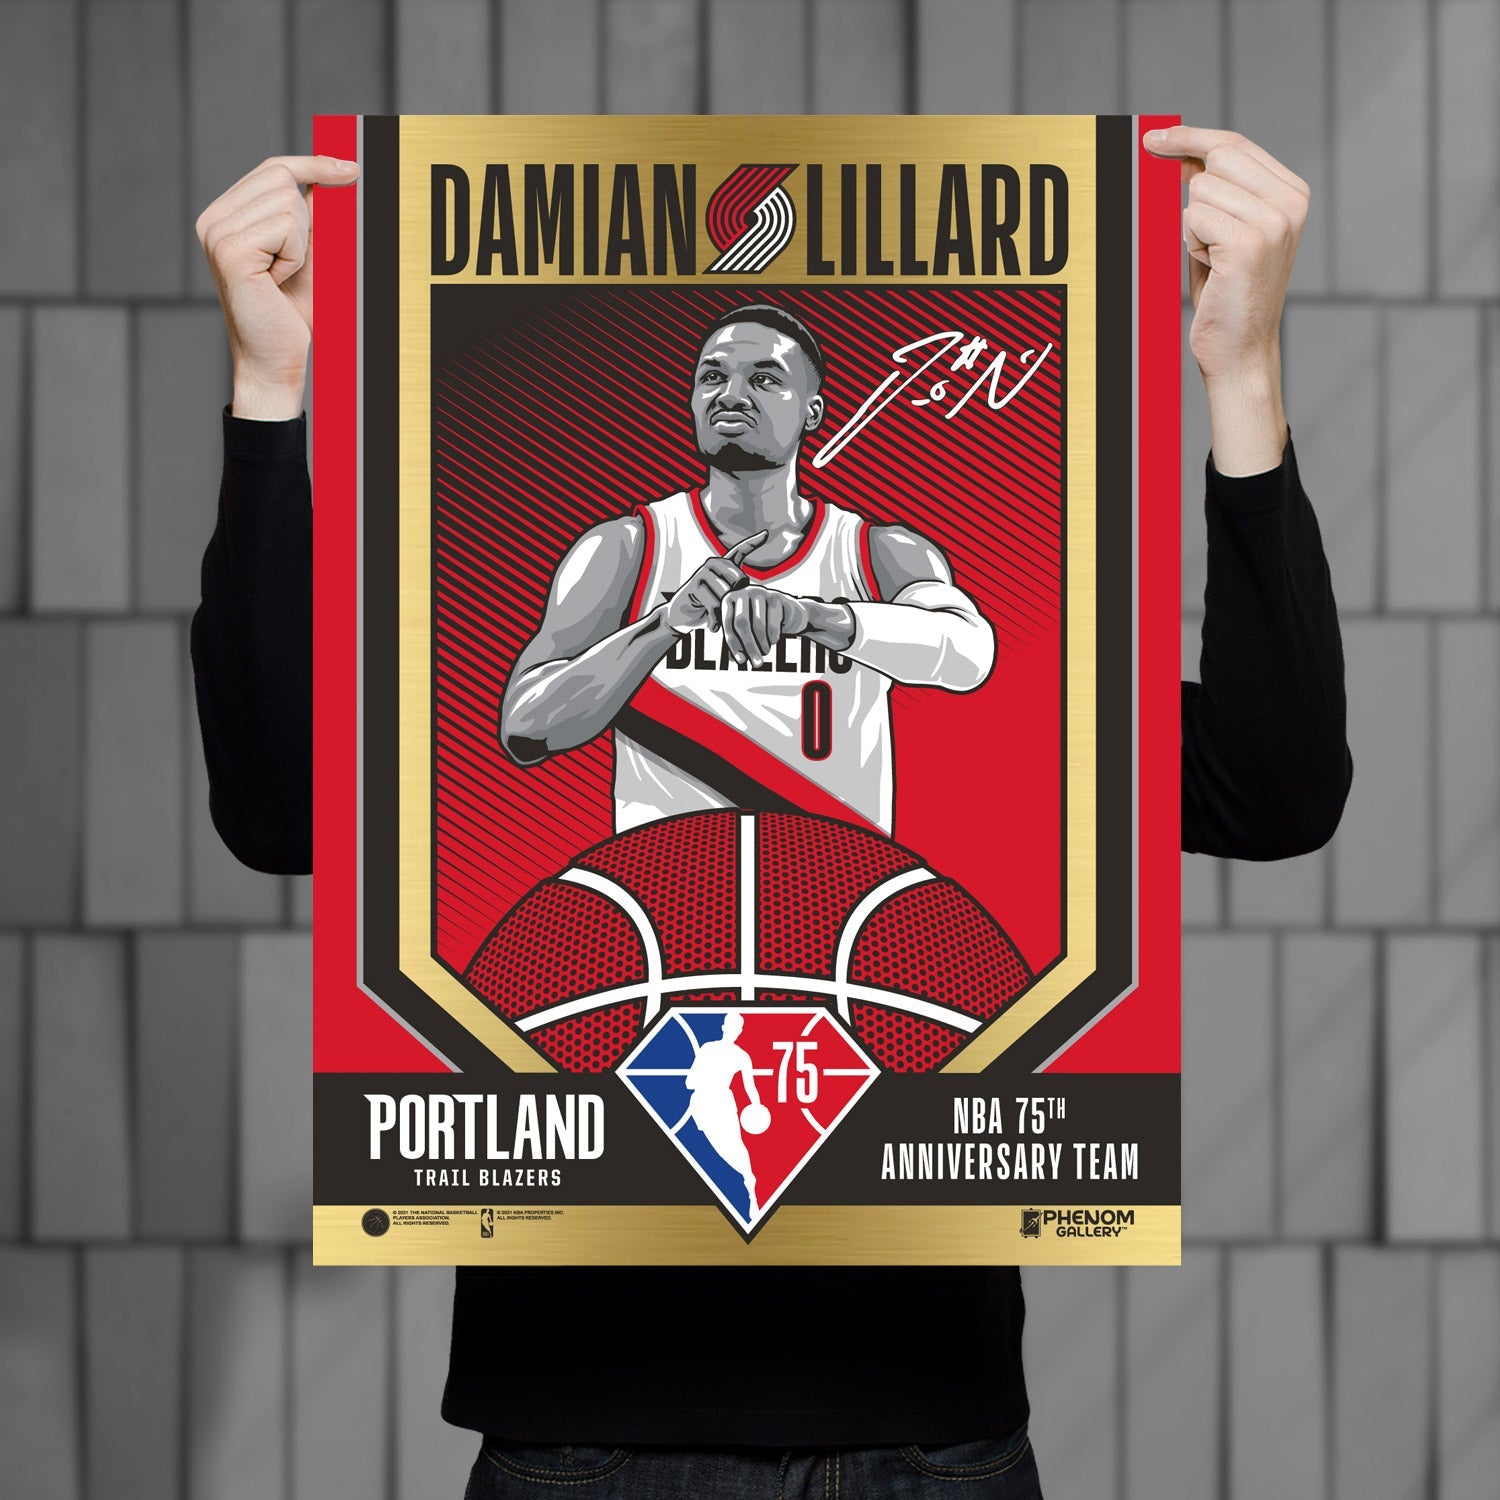 Portland Trailblazers 75th Anniversary Damian Lillard 18x24 Gold